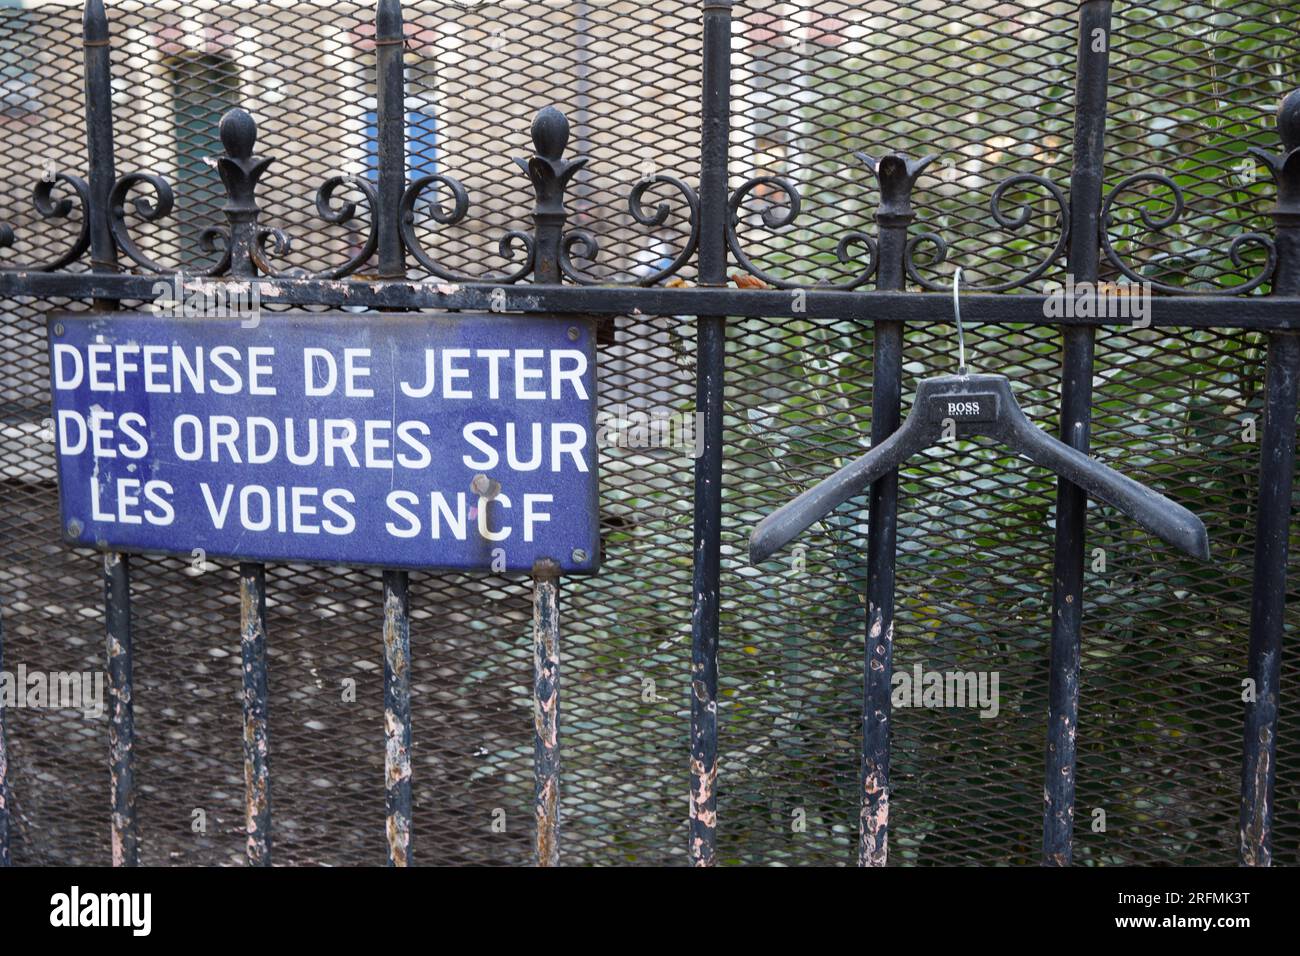 France, Ile-de-France region, Paris 16th arrondissement, boulevard Jules Sandeau, former Chemin de fer de Petite Ceinture, no littering sign, Stock Photo